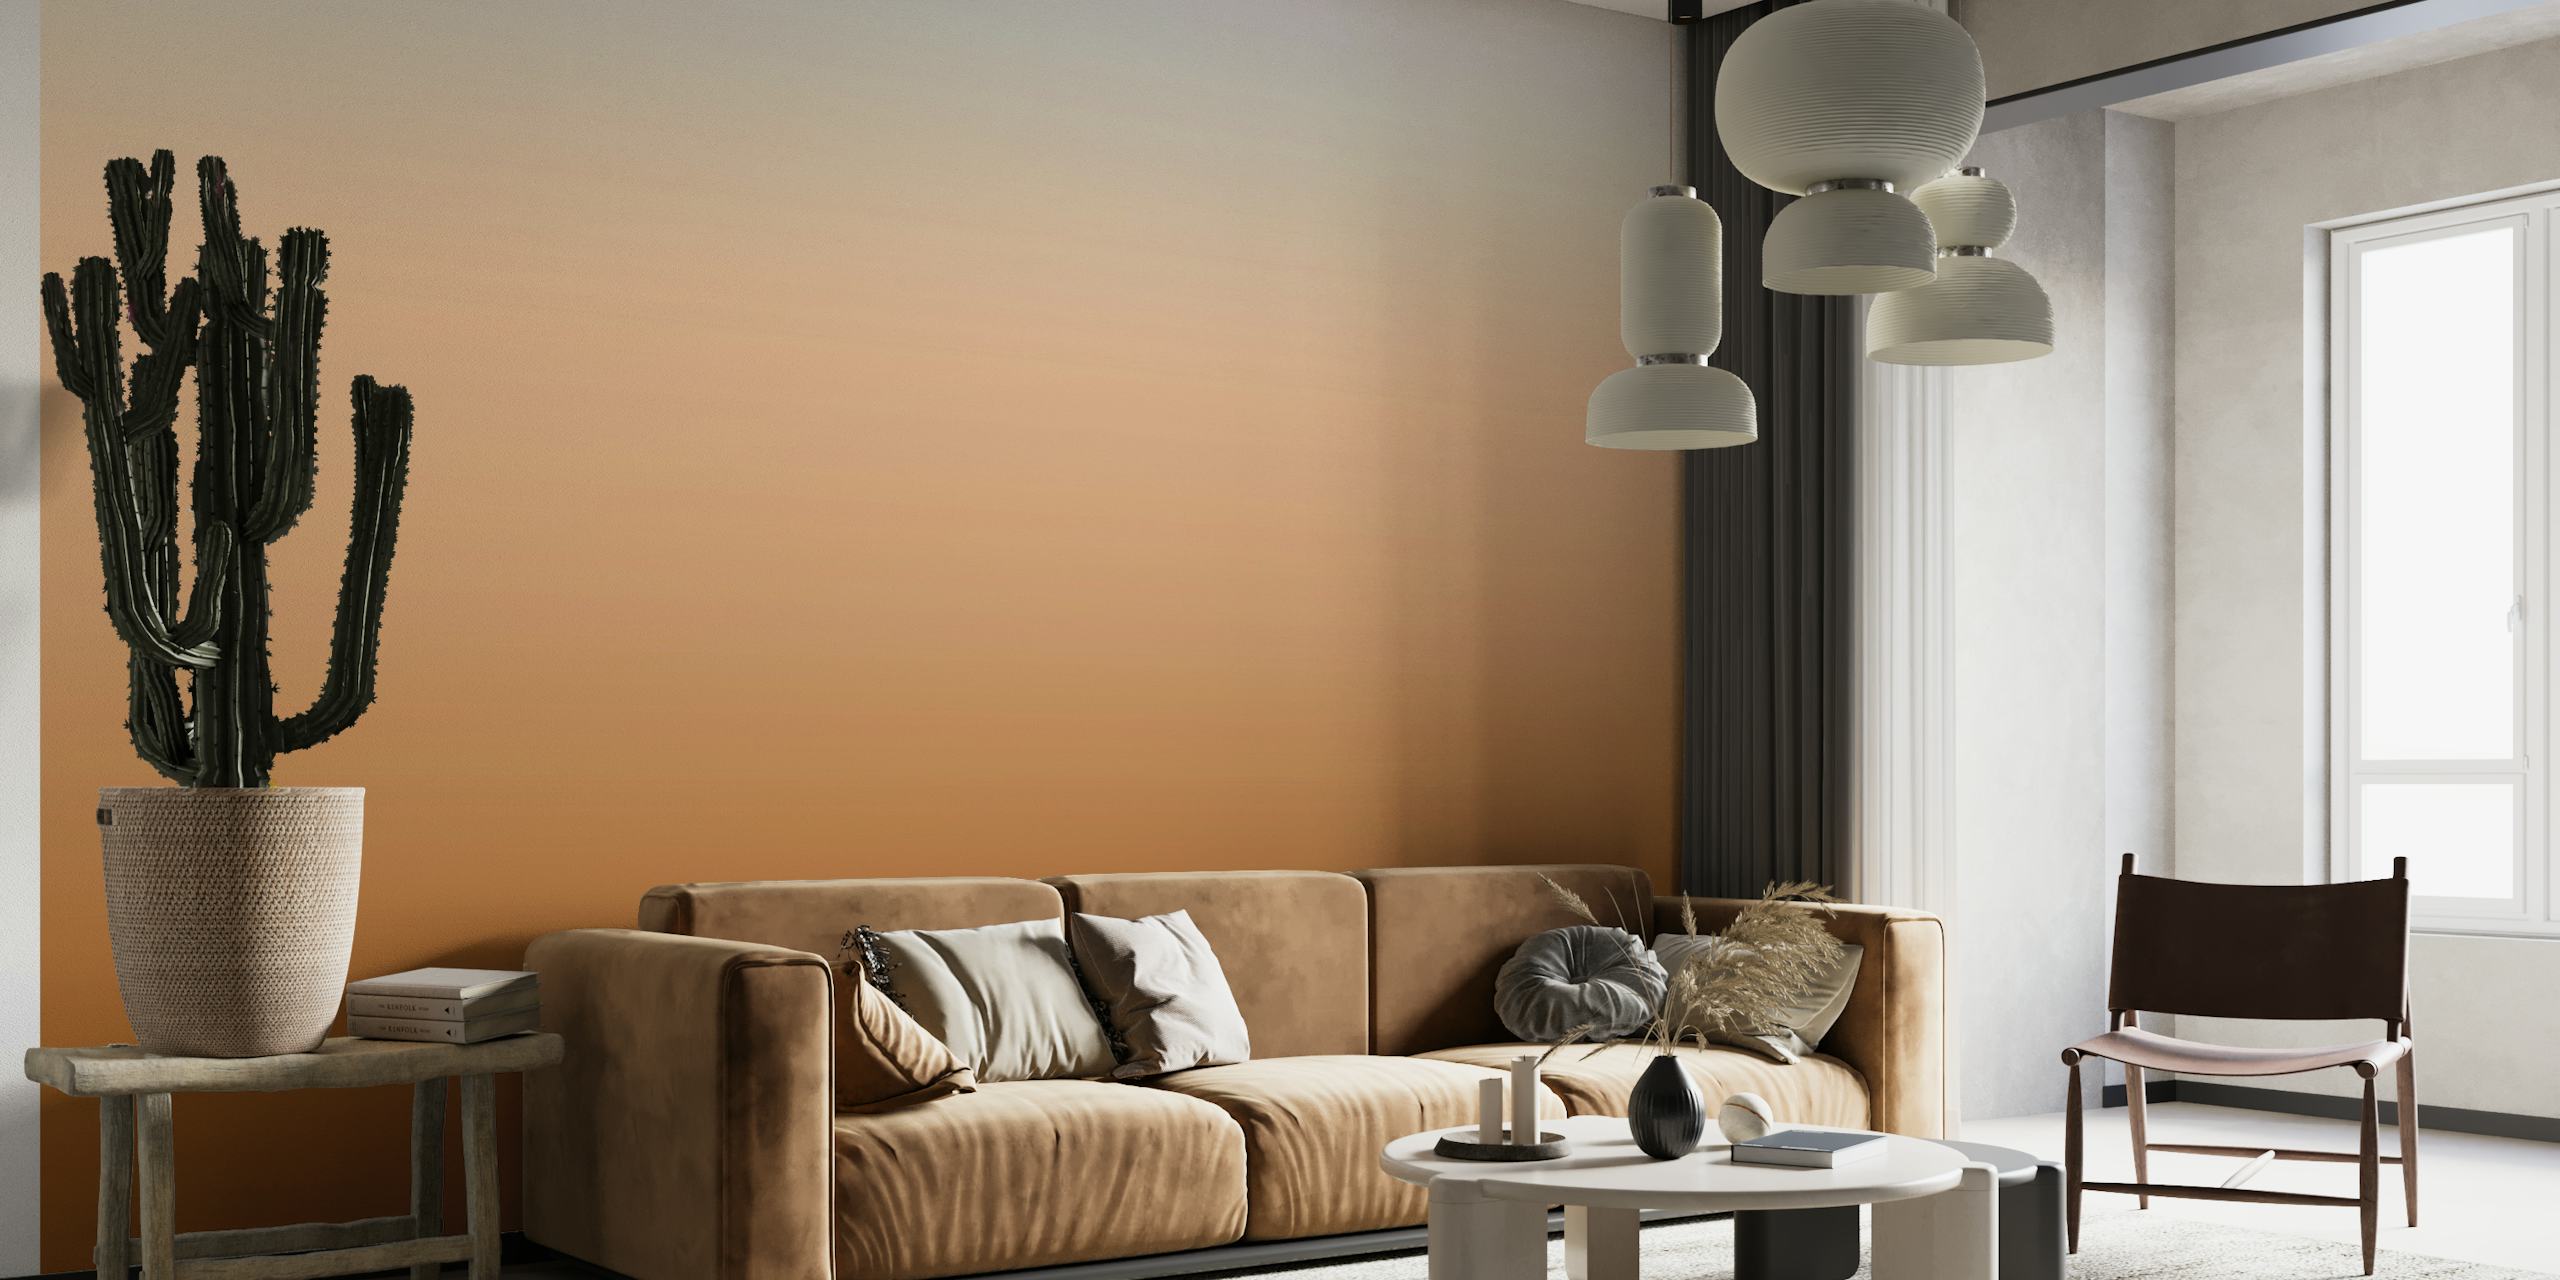 Mural de pared con degradado marrón silla de montar con una transición de tonos intensos a claros